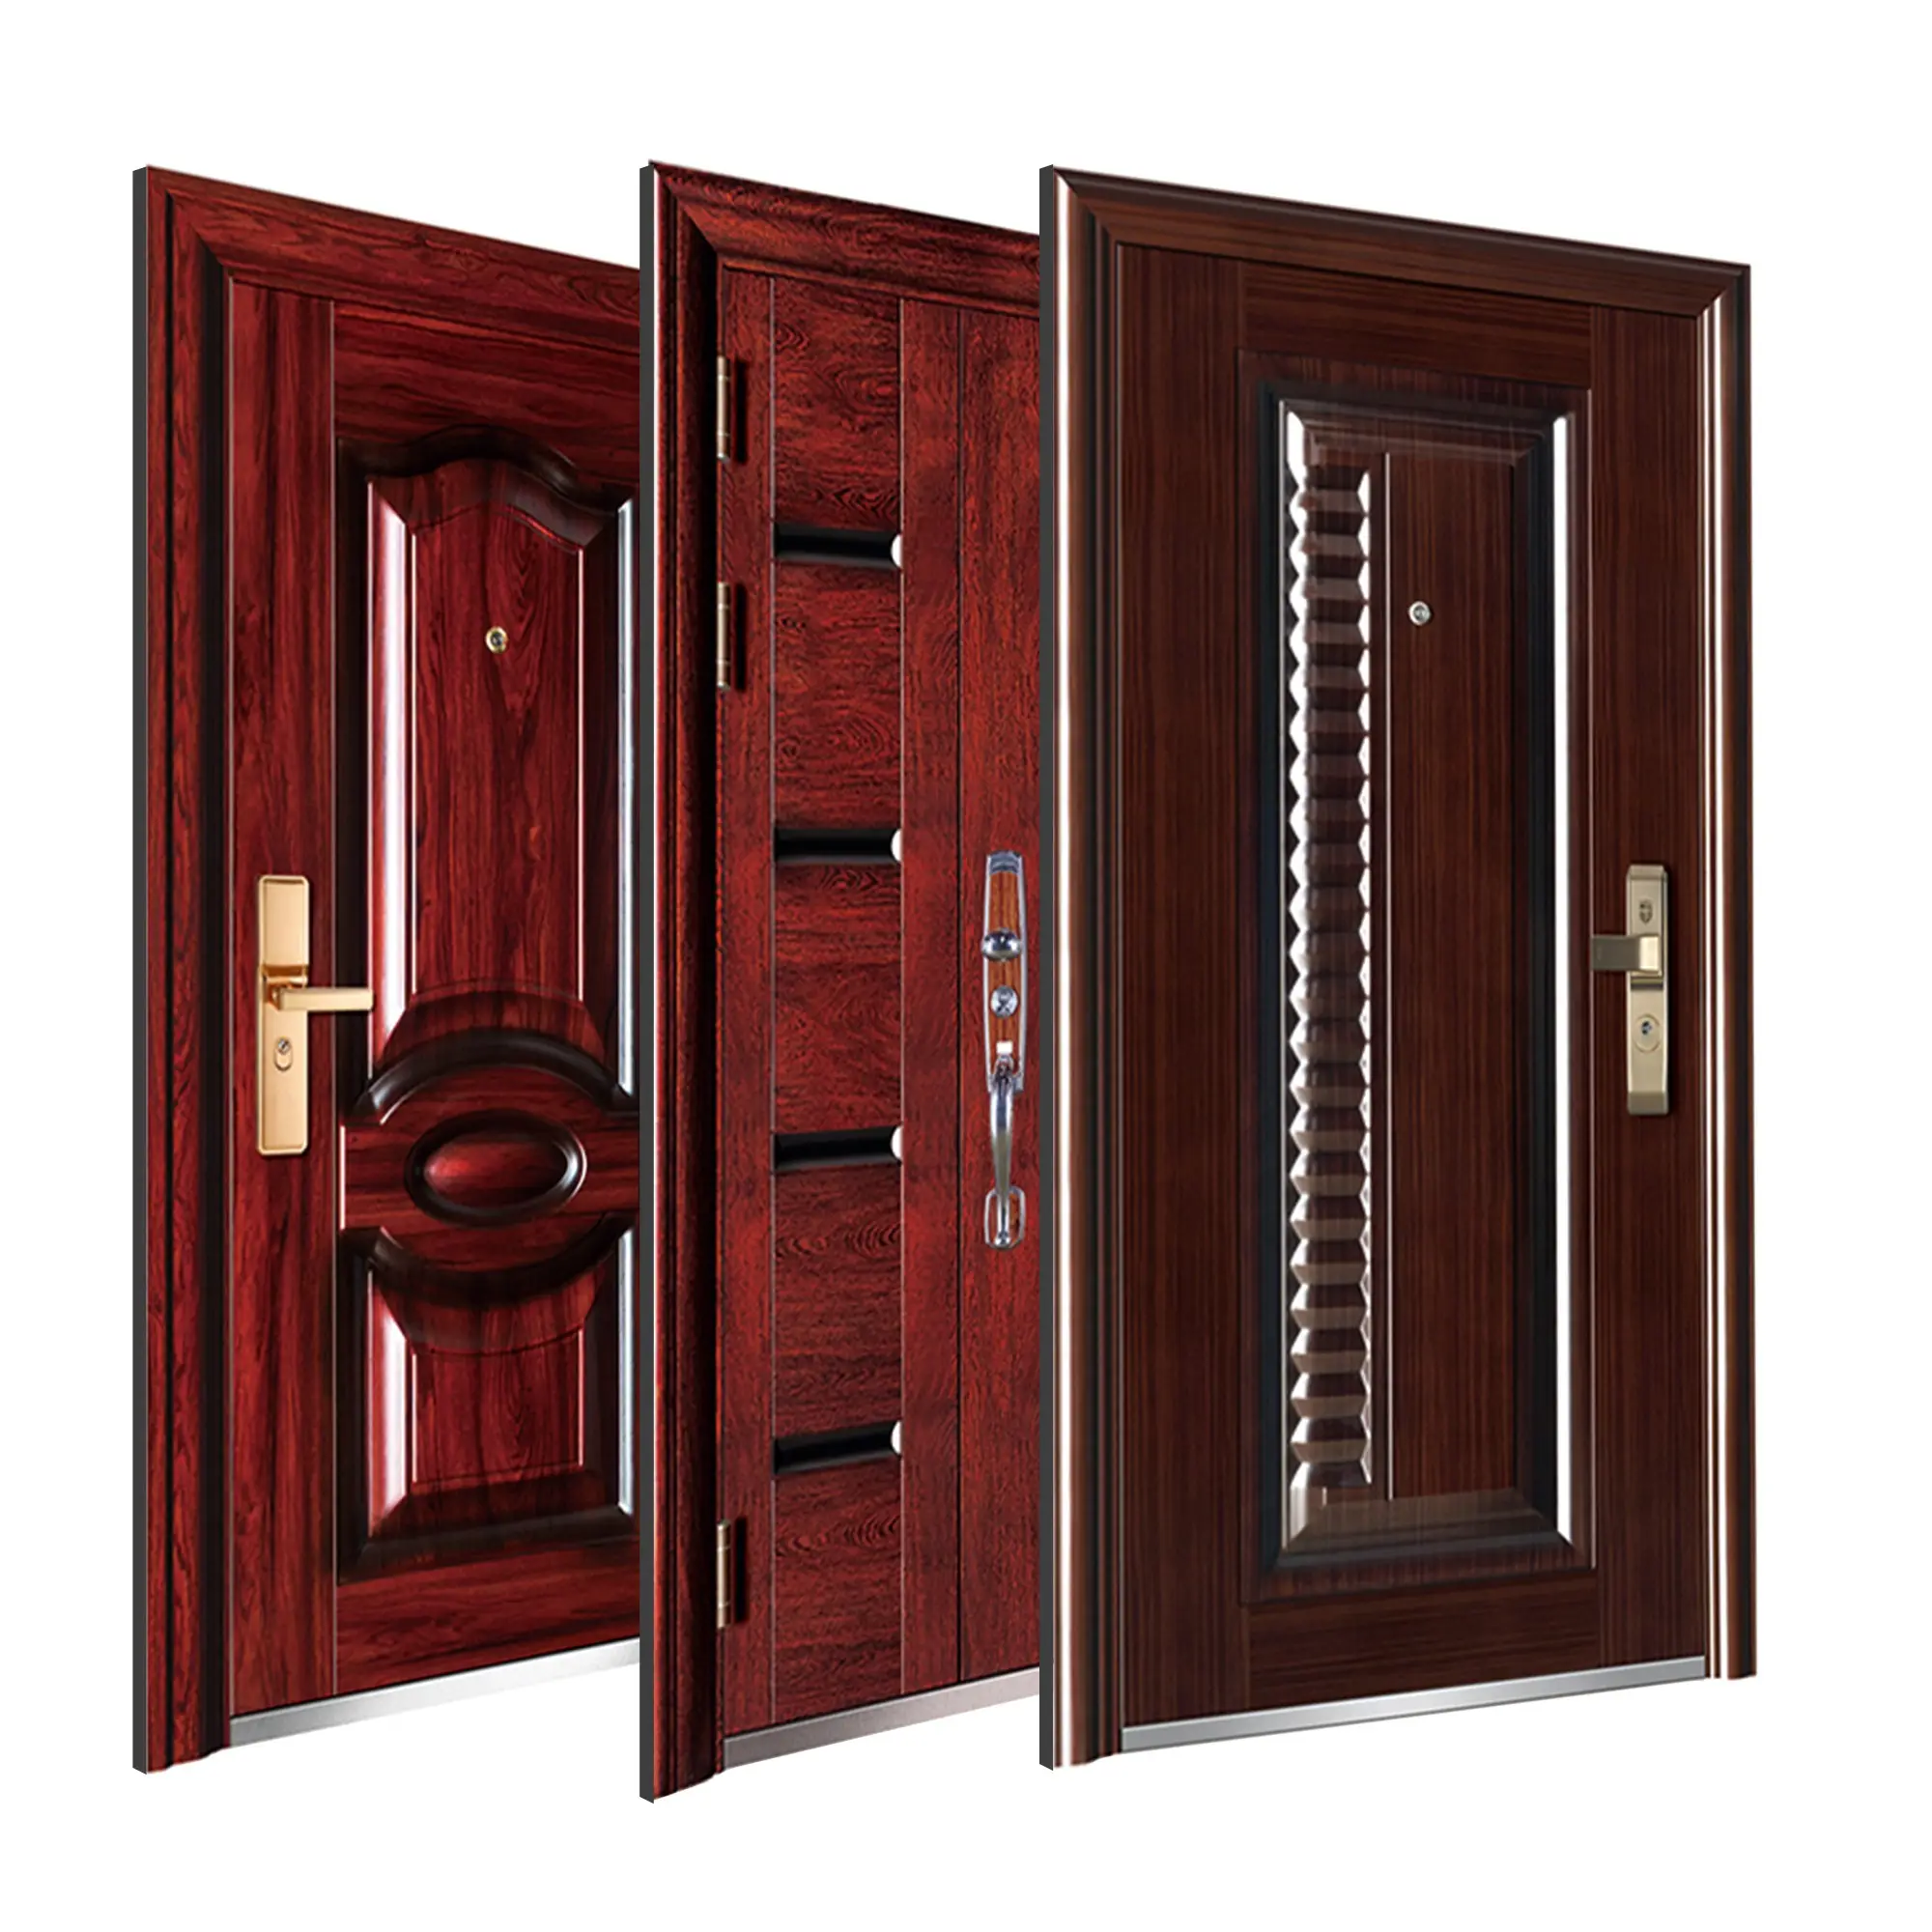 Puerta de seguridad de hierro fundido para Exterior, diseño antirrobo de Metal, estilo Retro, Color Rojo